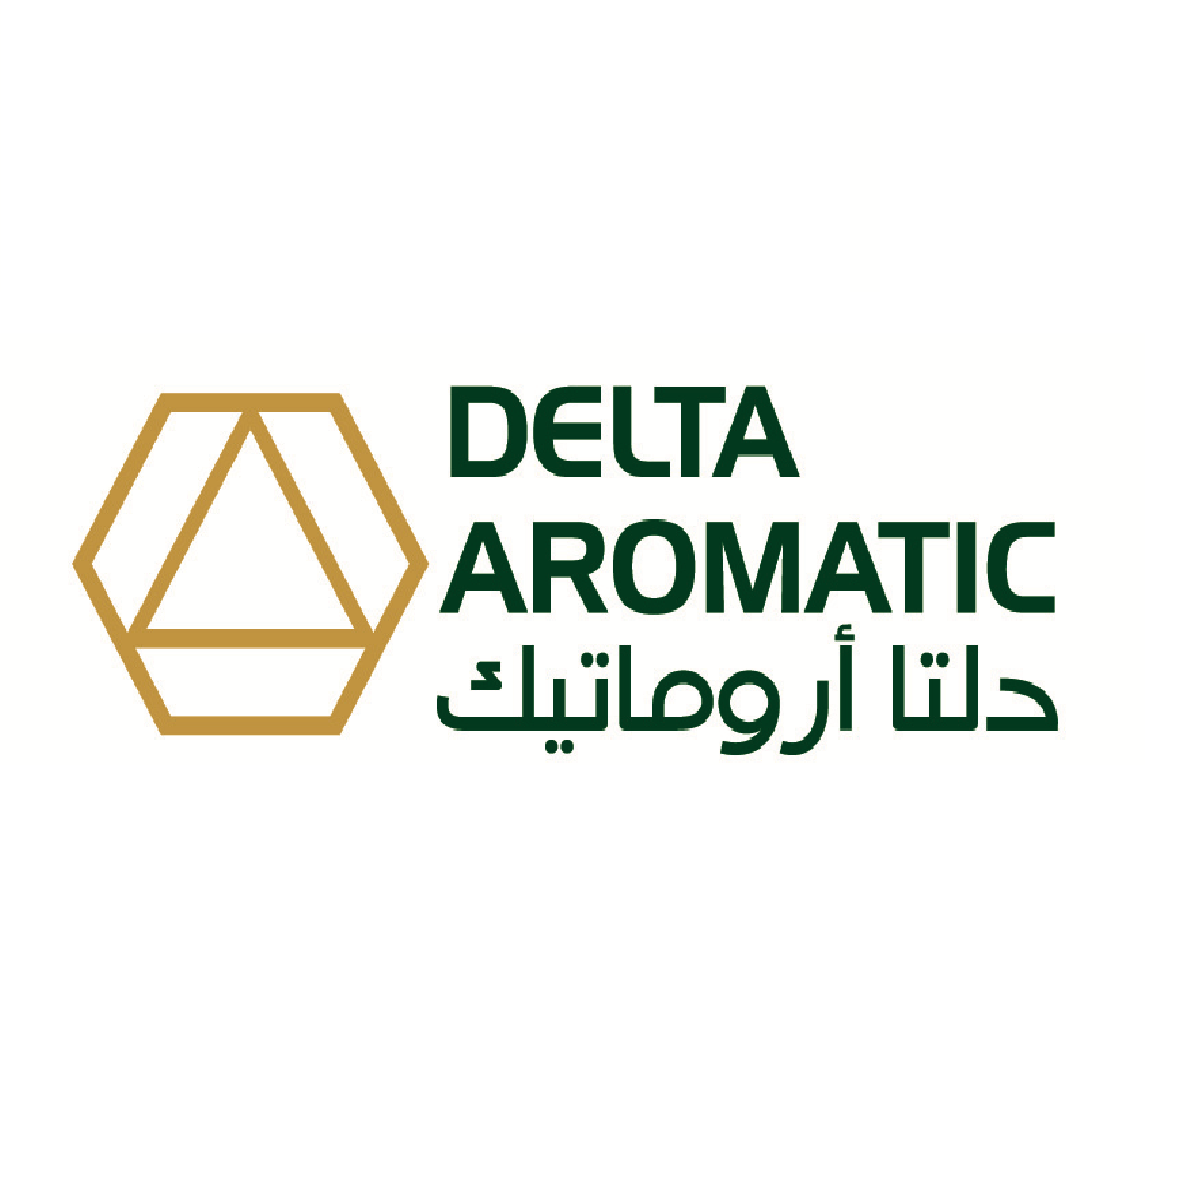 Delta Aromatic Company